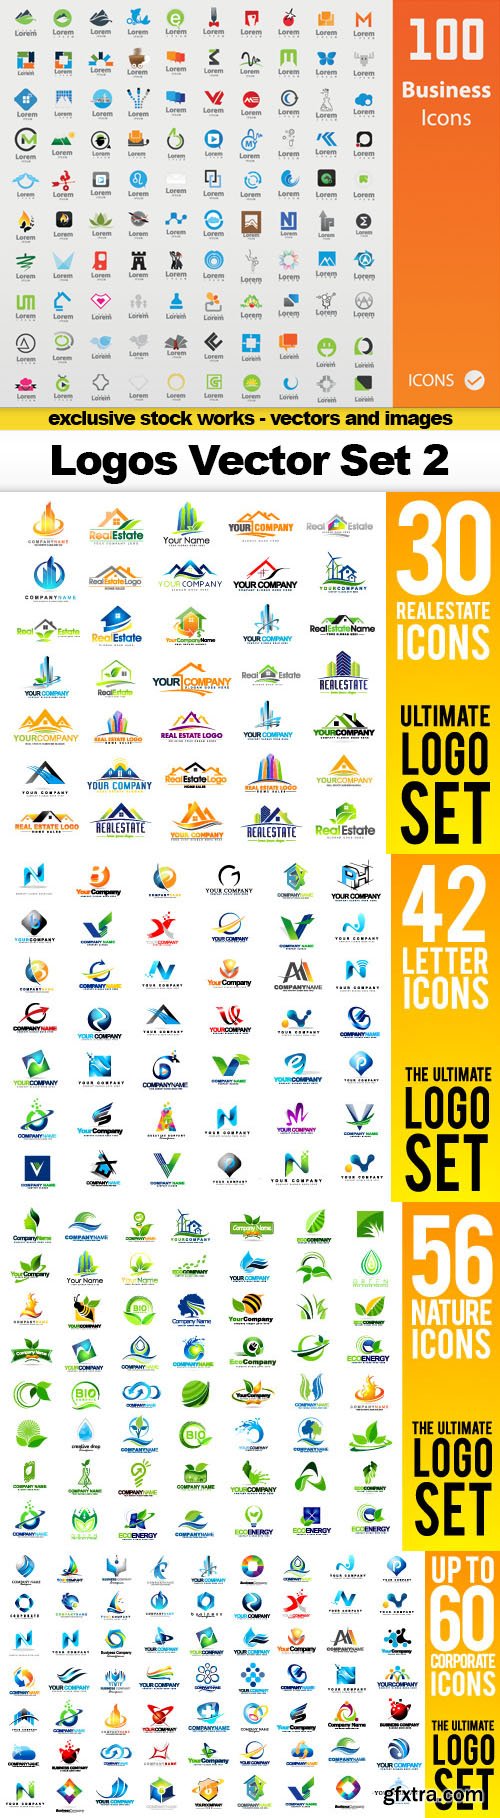 Logos Vector Set 2